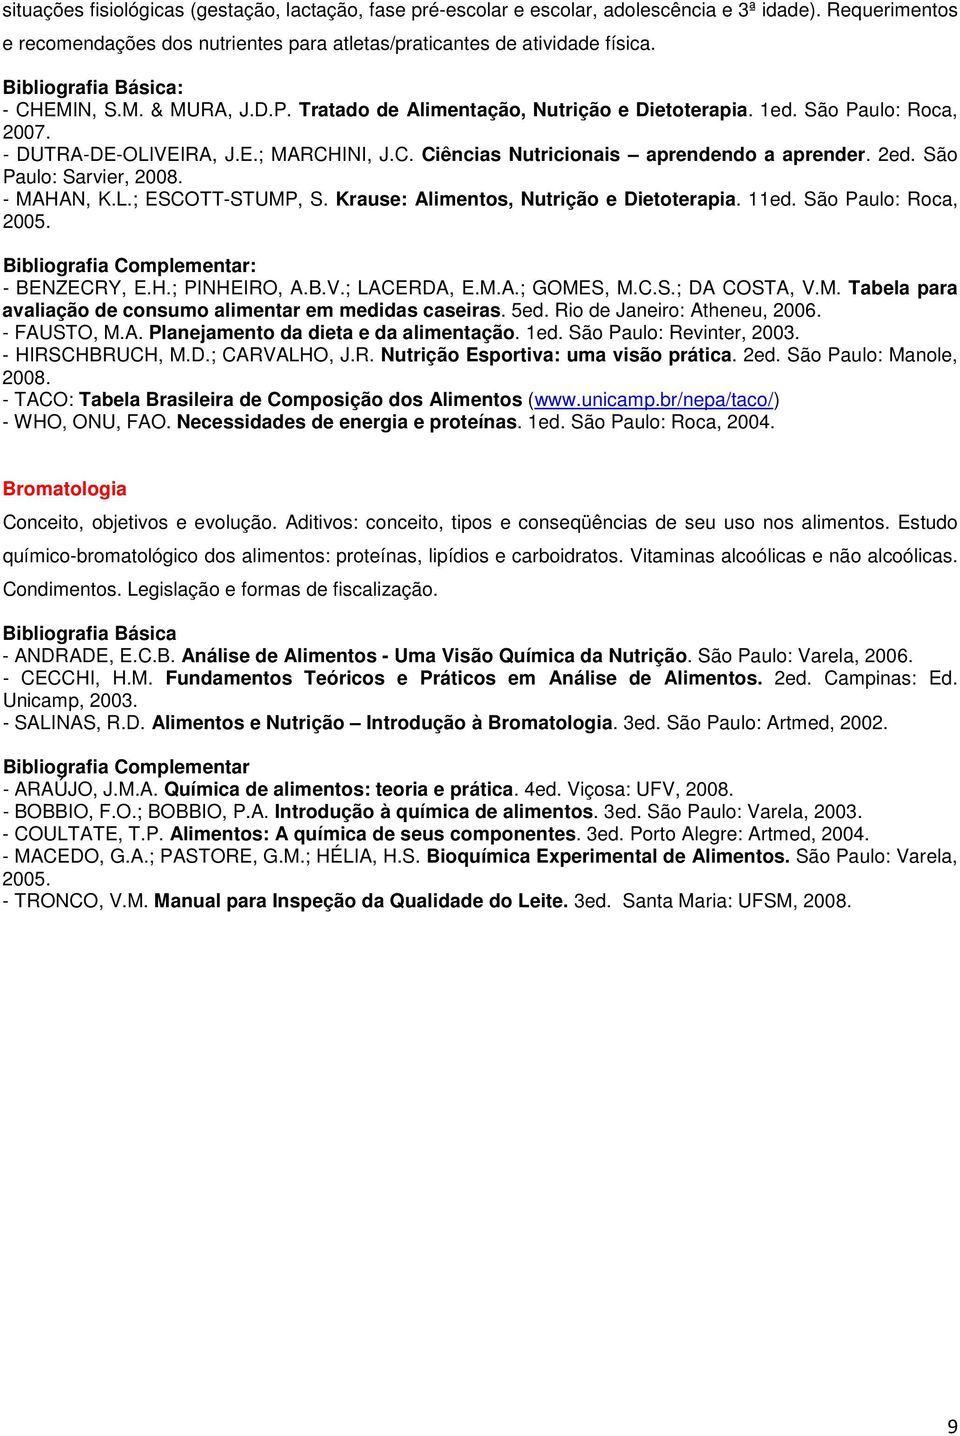 São Paulo: Sarvier, 2008. - MAHAN, K.L.; ESCOTT-STUMP, S. Krause: Alimentos, Nutrição e Dietoterapia. 11ed. São Paulo: Roca, 2005. - BENZECRY, E.H.; PINHEIRO, A.B.V.; LACERDA, E.M.A.; GOMES, M.C.S.; DA COSTA, V.